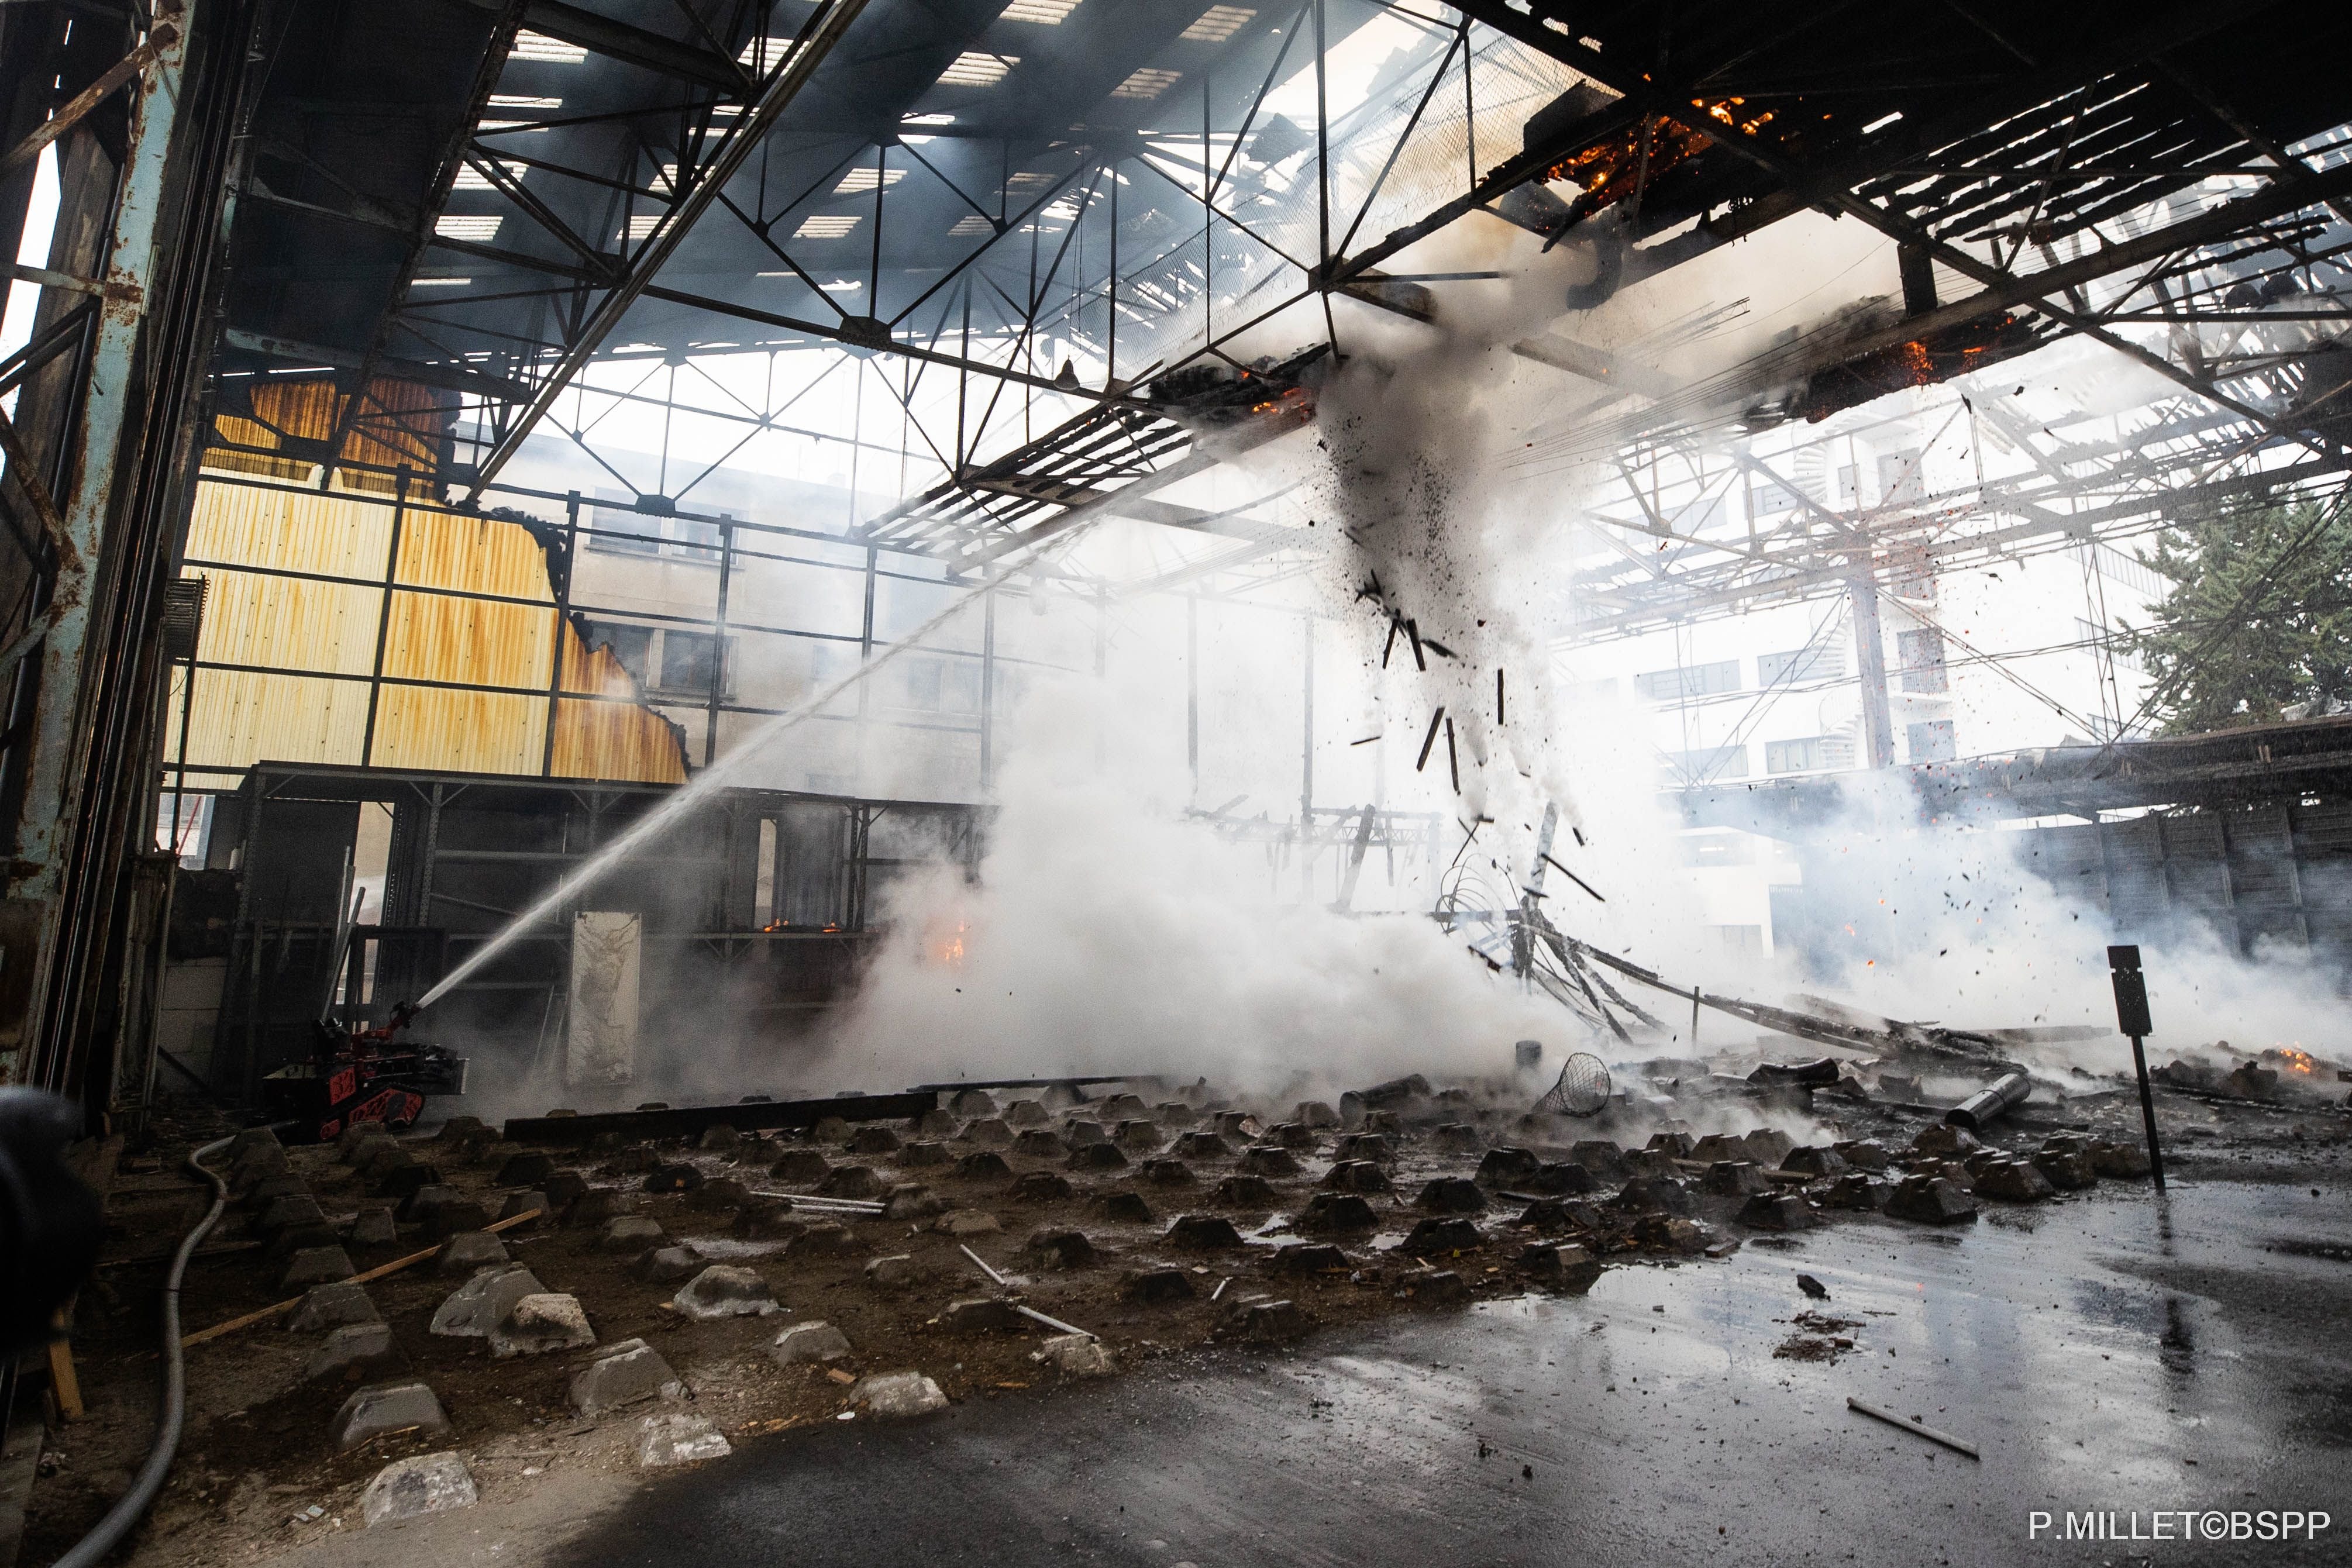 Nanterre, 10 janvier 2023. Un incendie a ravagé un entrepôt de menuiserie de 3000 m2 appartenant à la société Paris La Défense. BSPP/P. Millet